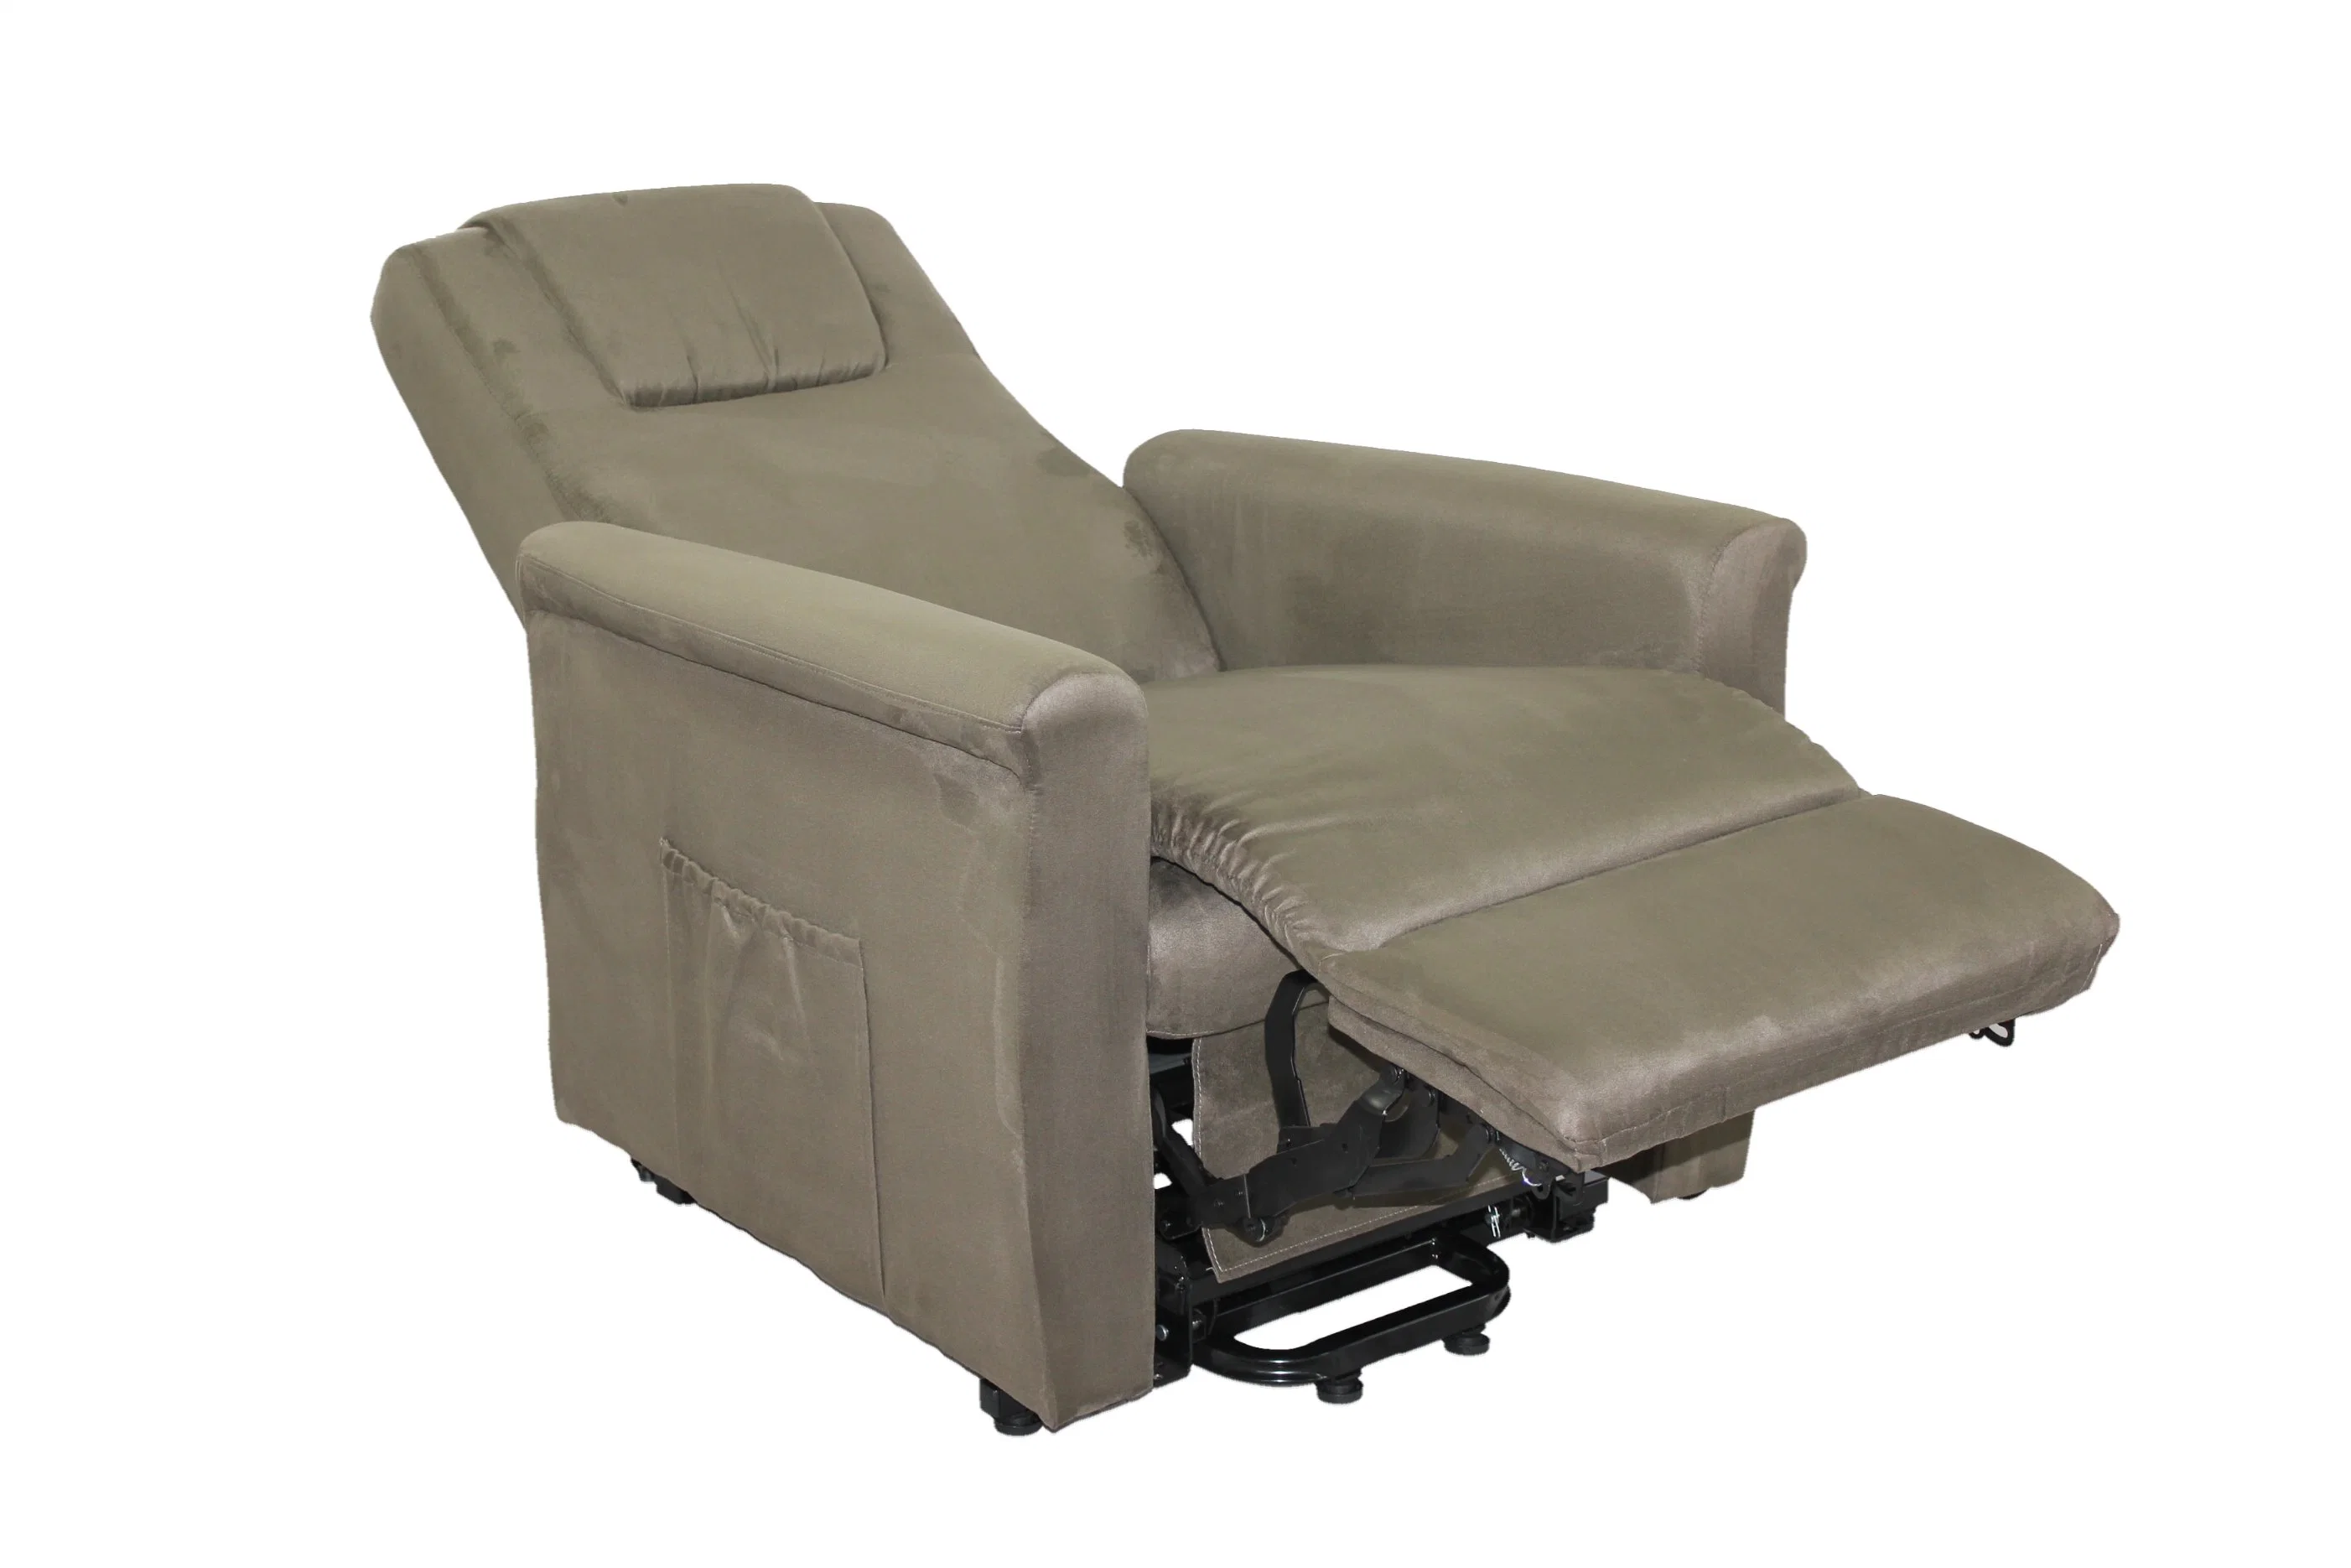 Guter Service SPA Patient Transfer Ganzkörper Massage Sofa Gas Lift Chair